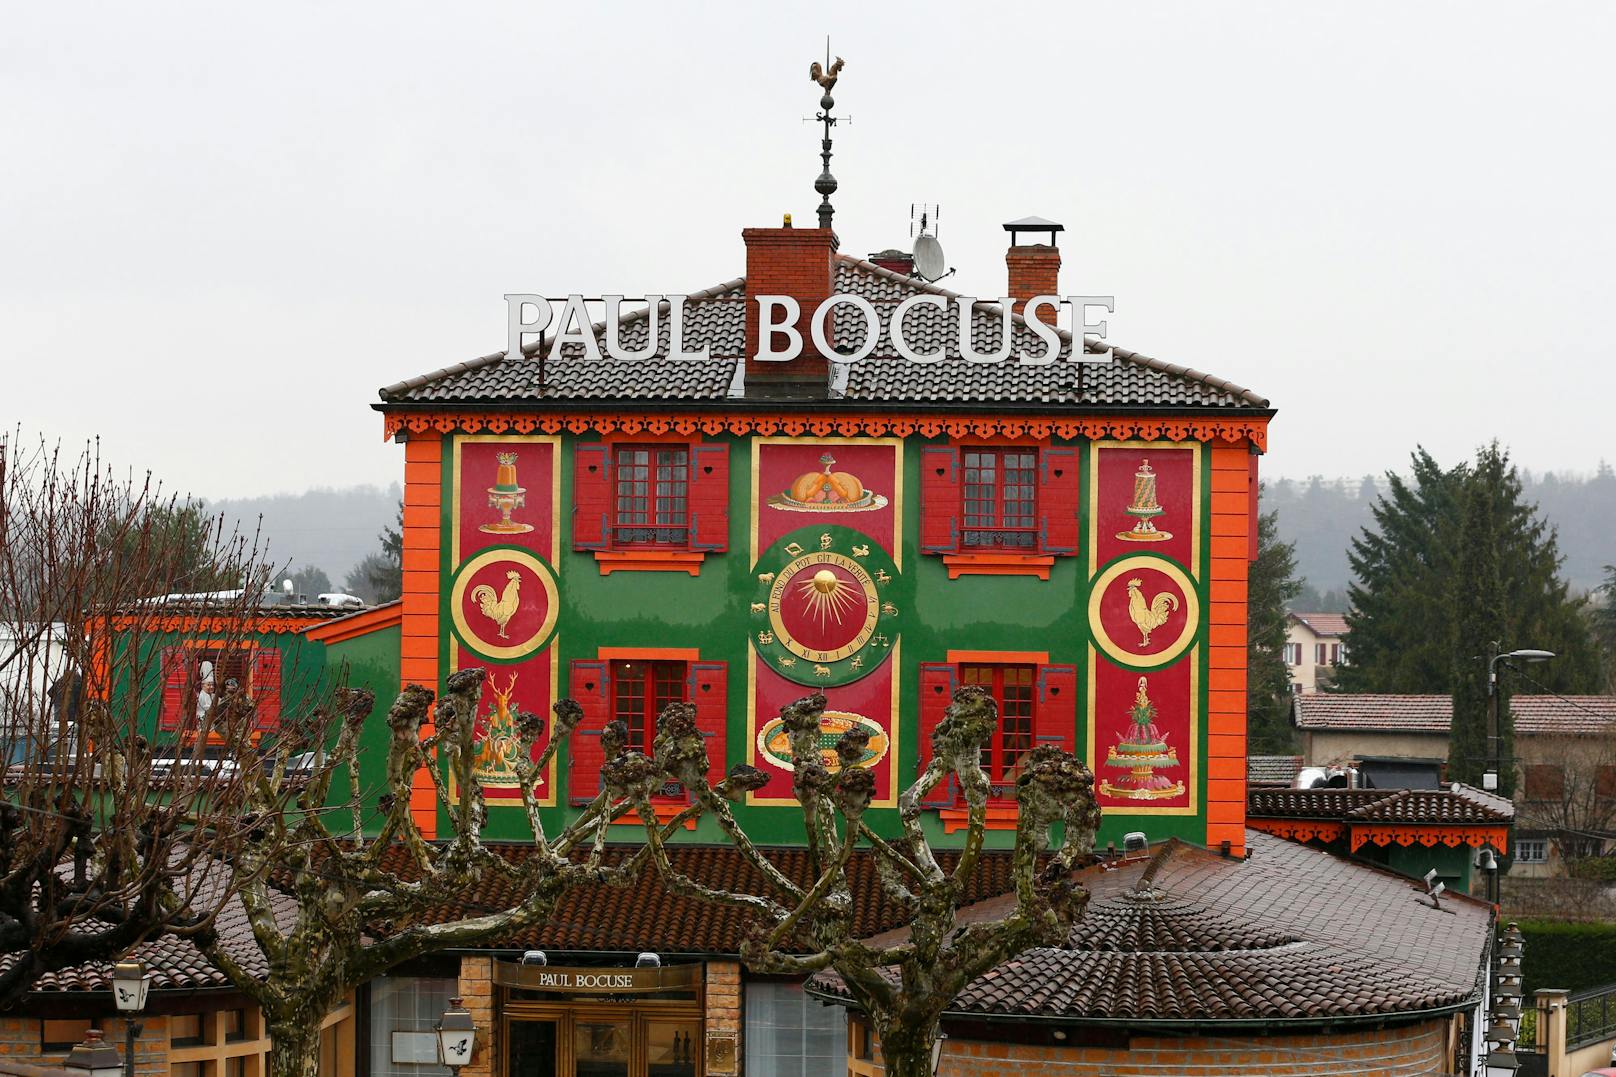 Als das Restaurant L’ Auberge du Pont de Collonges in Collonges-au-Mont-d'Or in der Nähe von Lyon letztes Jahr auf zwei Sterne heruntergestuft wurde, ging ein Aufschrei durchs Land. Immerhin handelt es sich um das einstige Lokal von Paul Bocuse – dem wohl bekanntesten französischen Koch aller Zeiten.